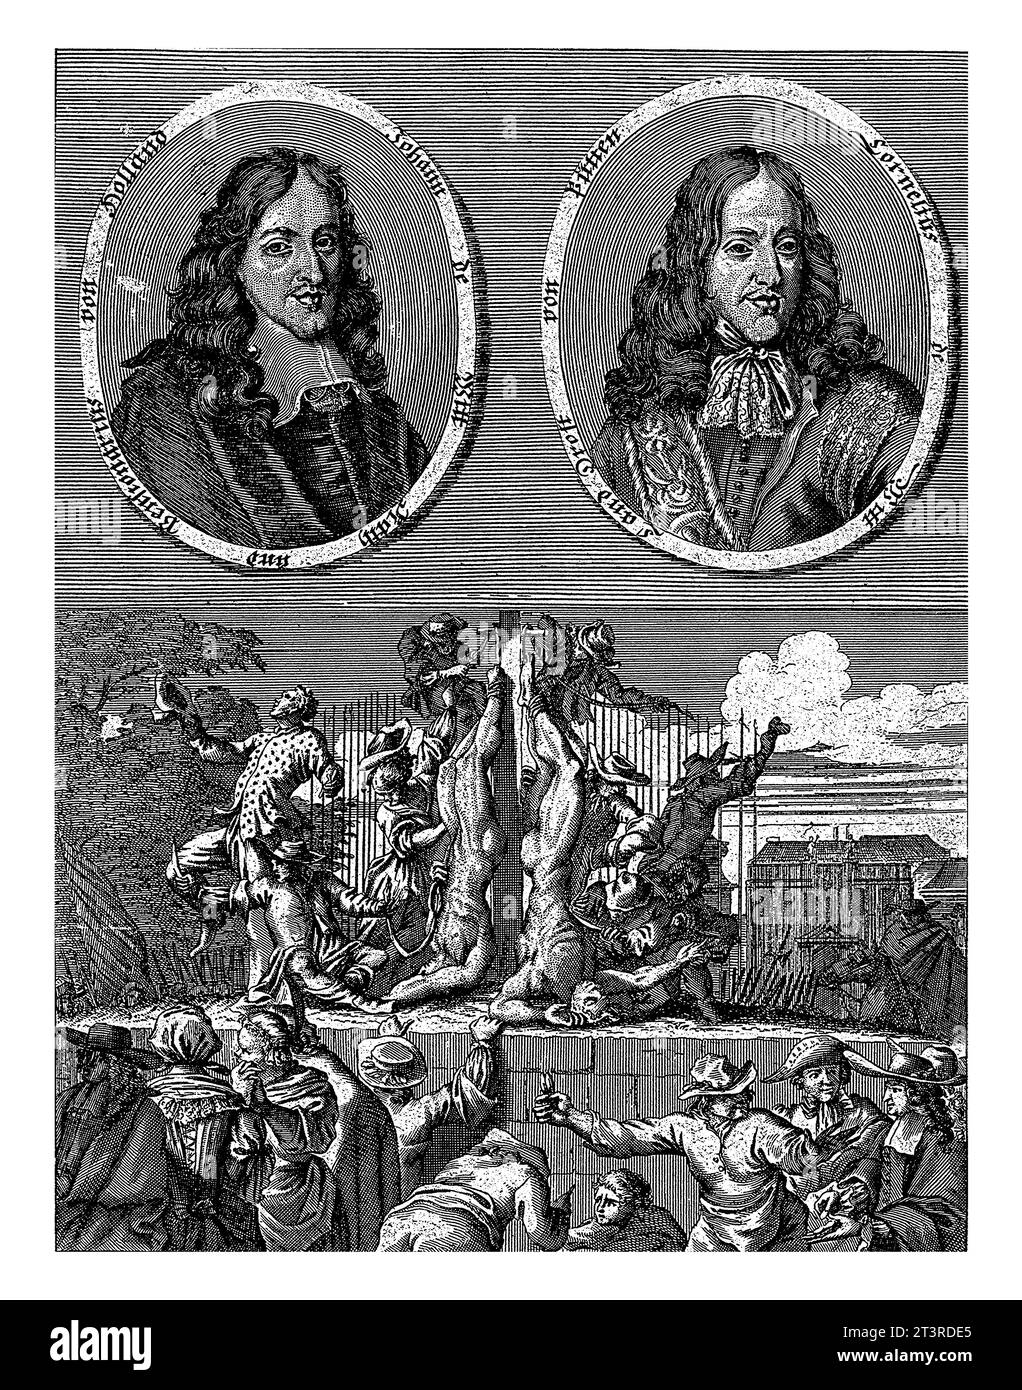 La mutilación de los cuerpos de los Hermanos De Witt, 1672, anónimo, 1672 - 1699 Revista alemana sobre los retratos de los hermanos De Witt. Foto de stock